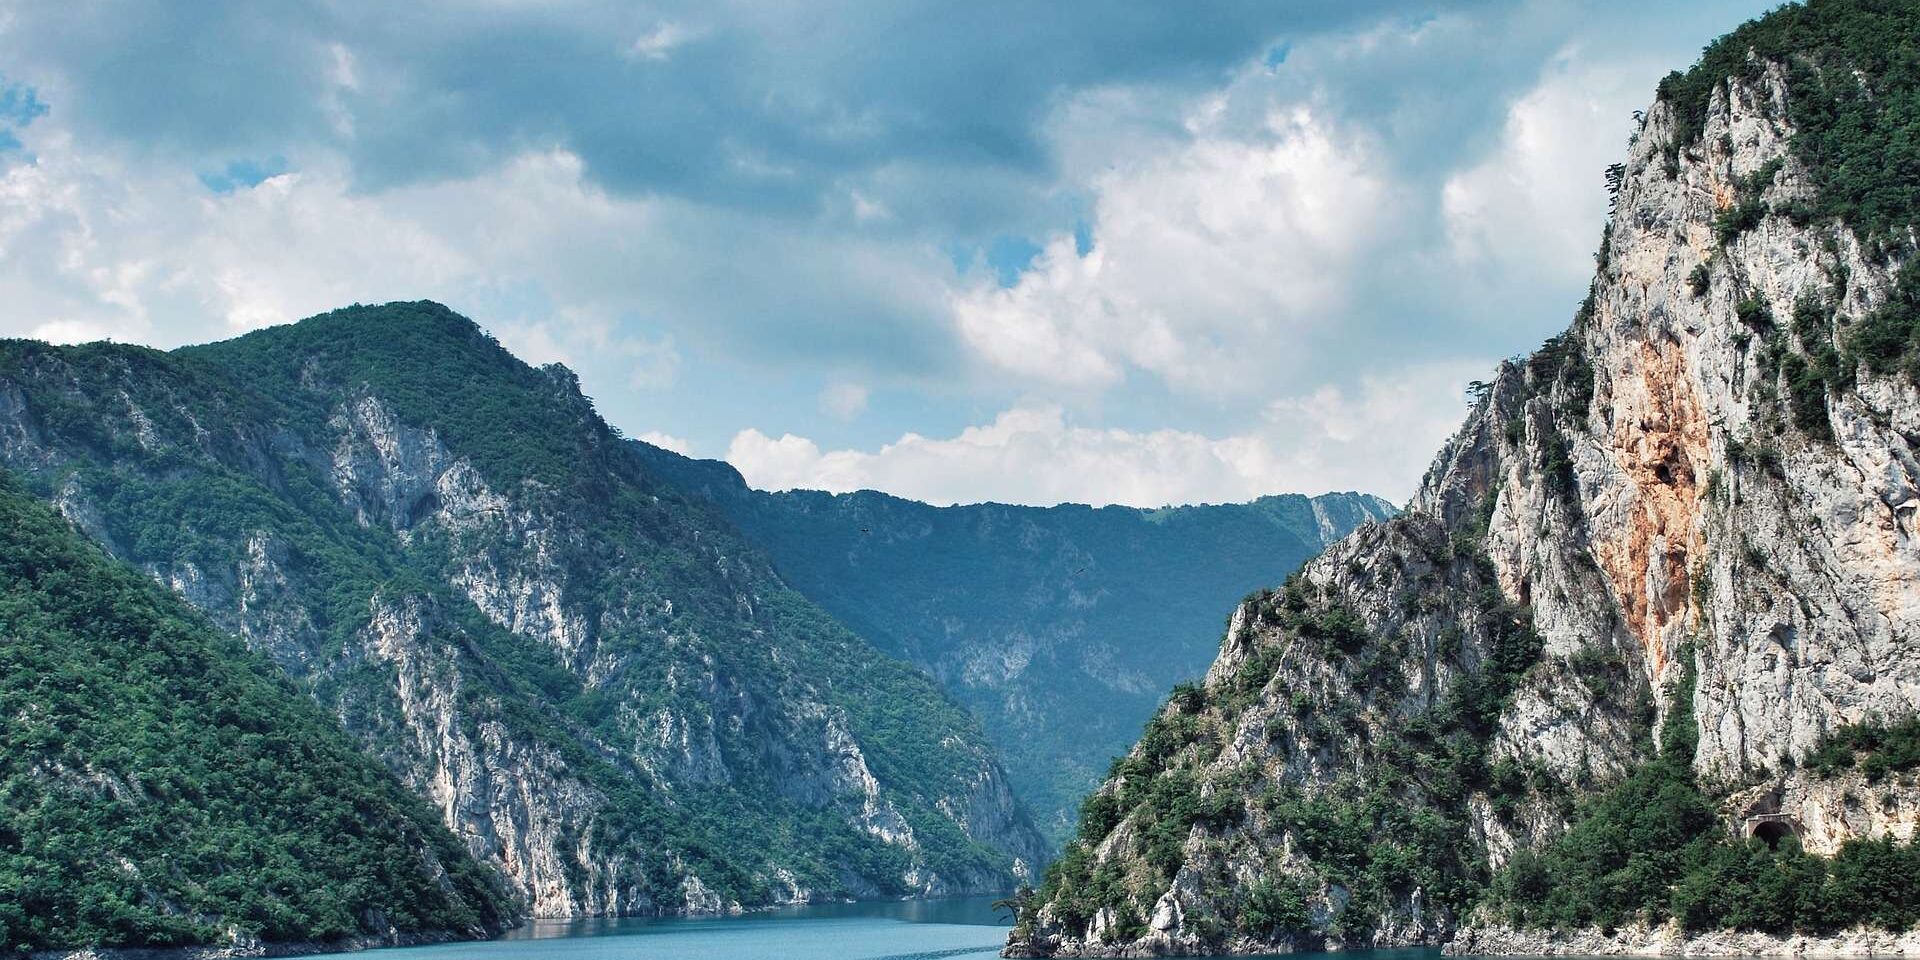 River running through mountains in Montenegro